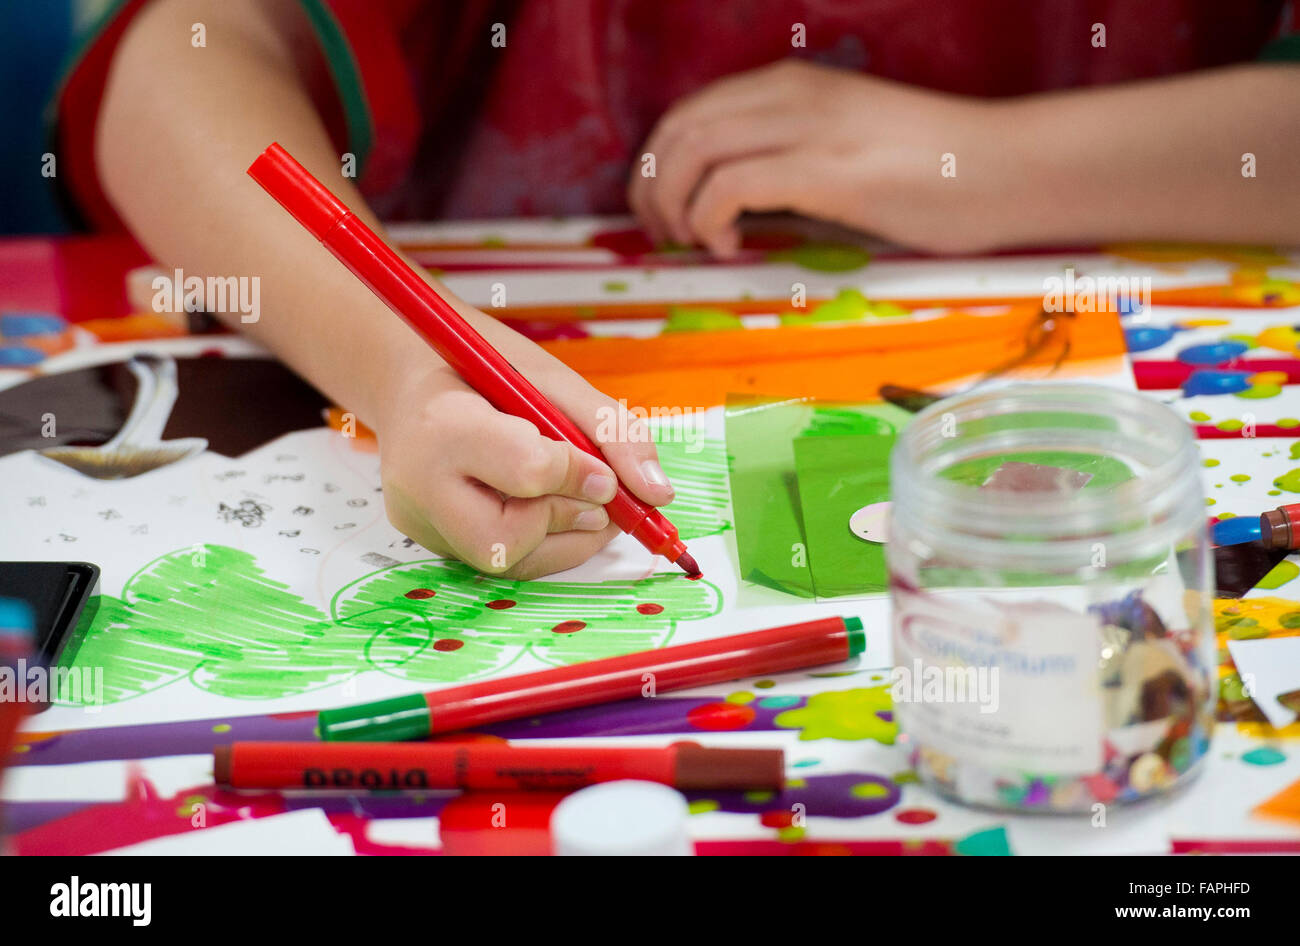 Los niños que aprenden habilidades creativas mientras realiza actividades de arte y artesanía en la escuela. Foto de stock